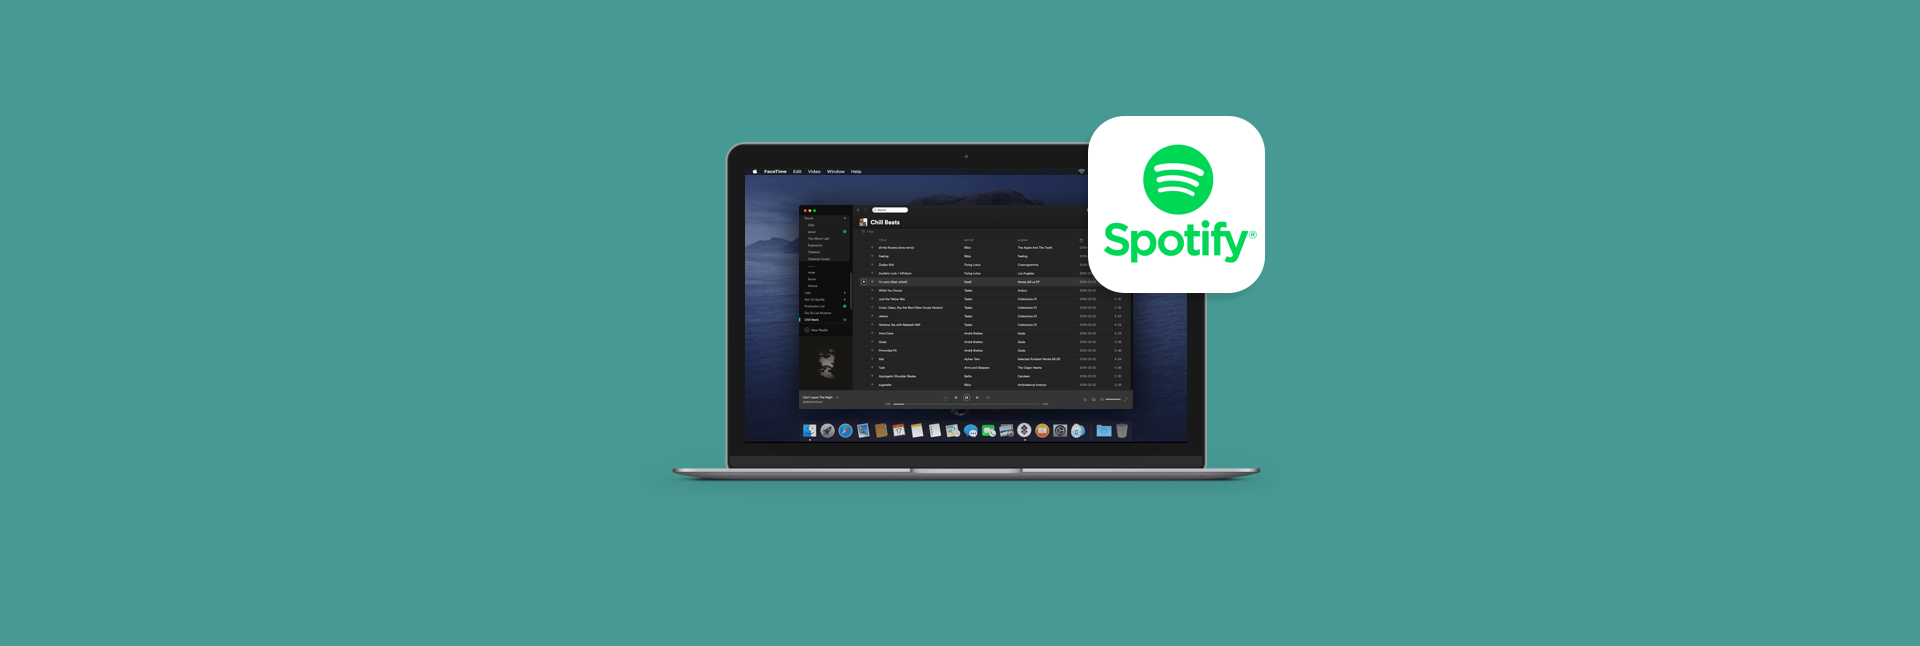 Do Not Start Spotify On Startup Mac